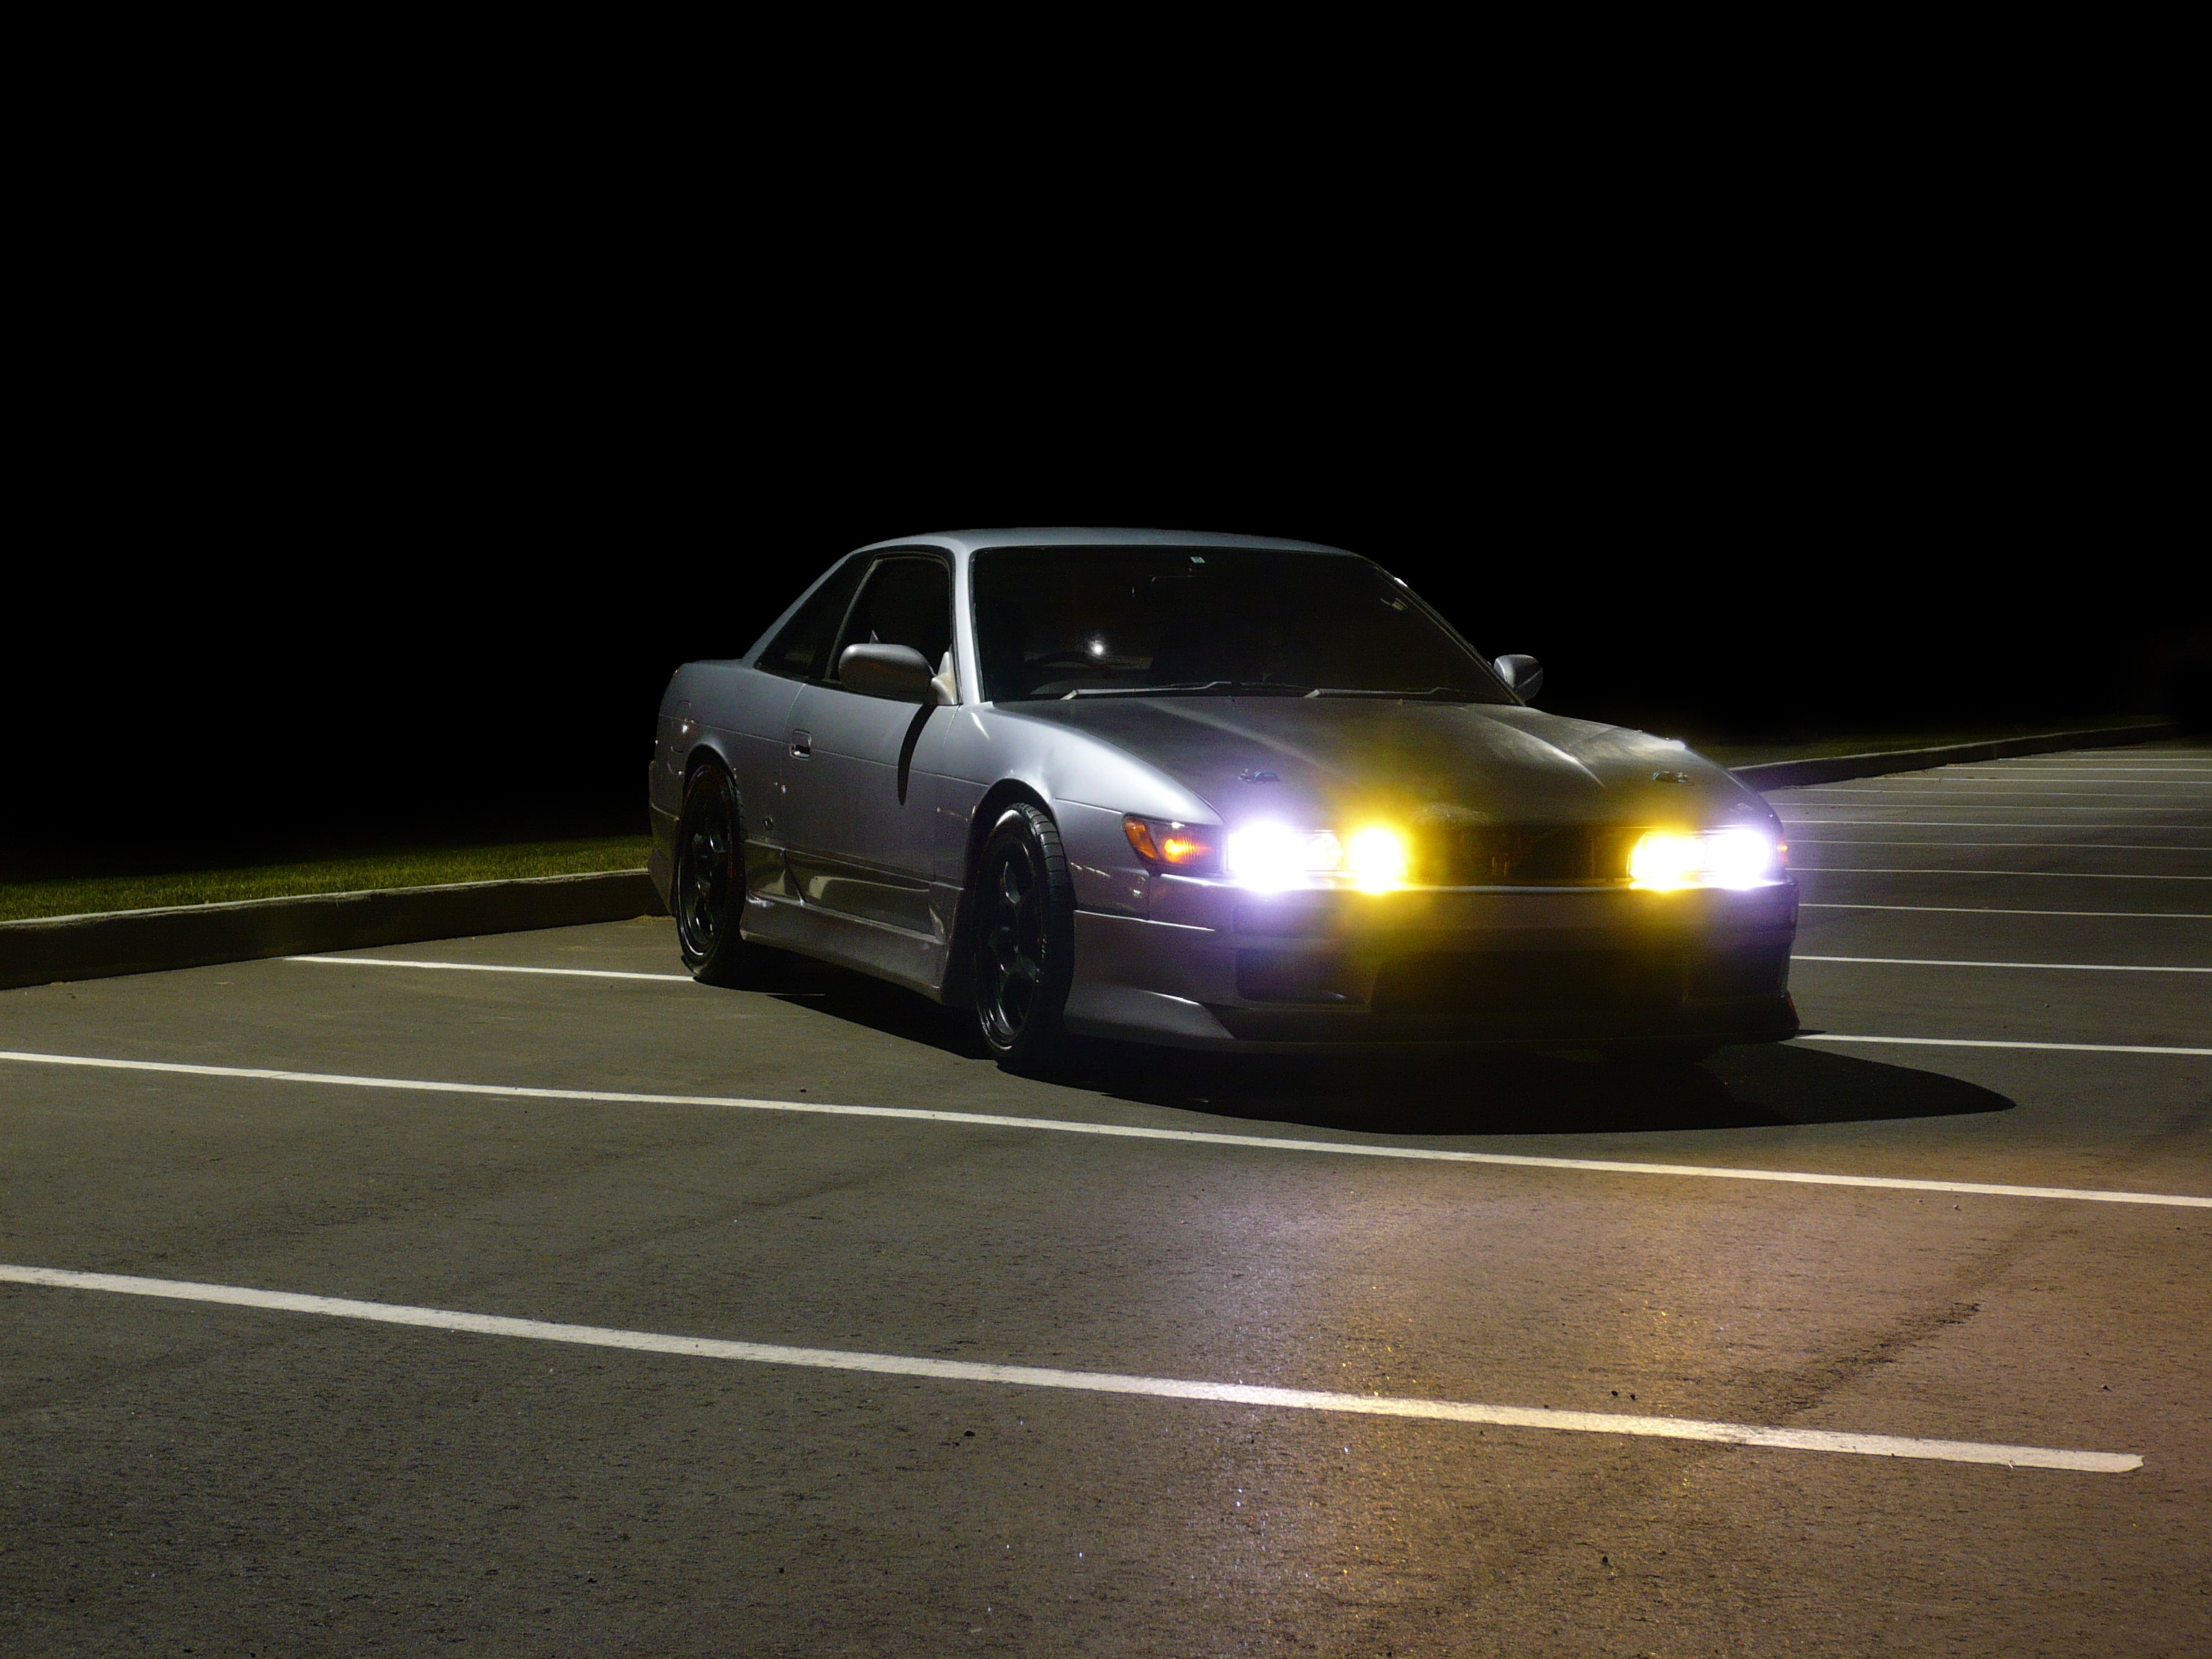 night, cars, parking, Nissan Silvia S13 - desktop wallpaper